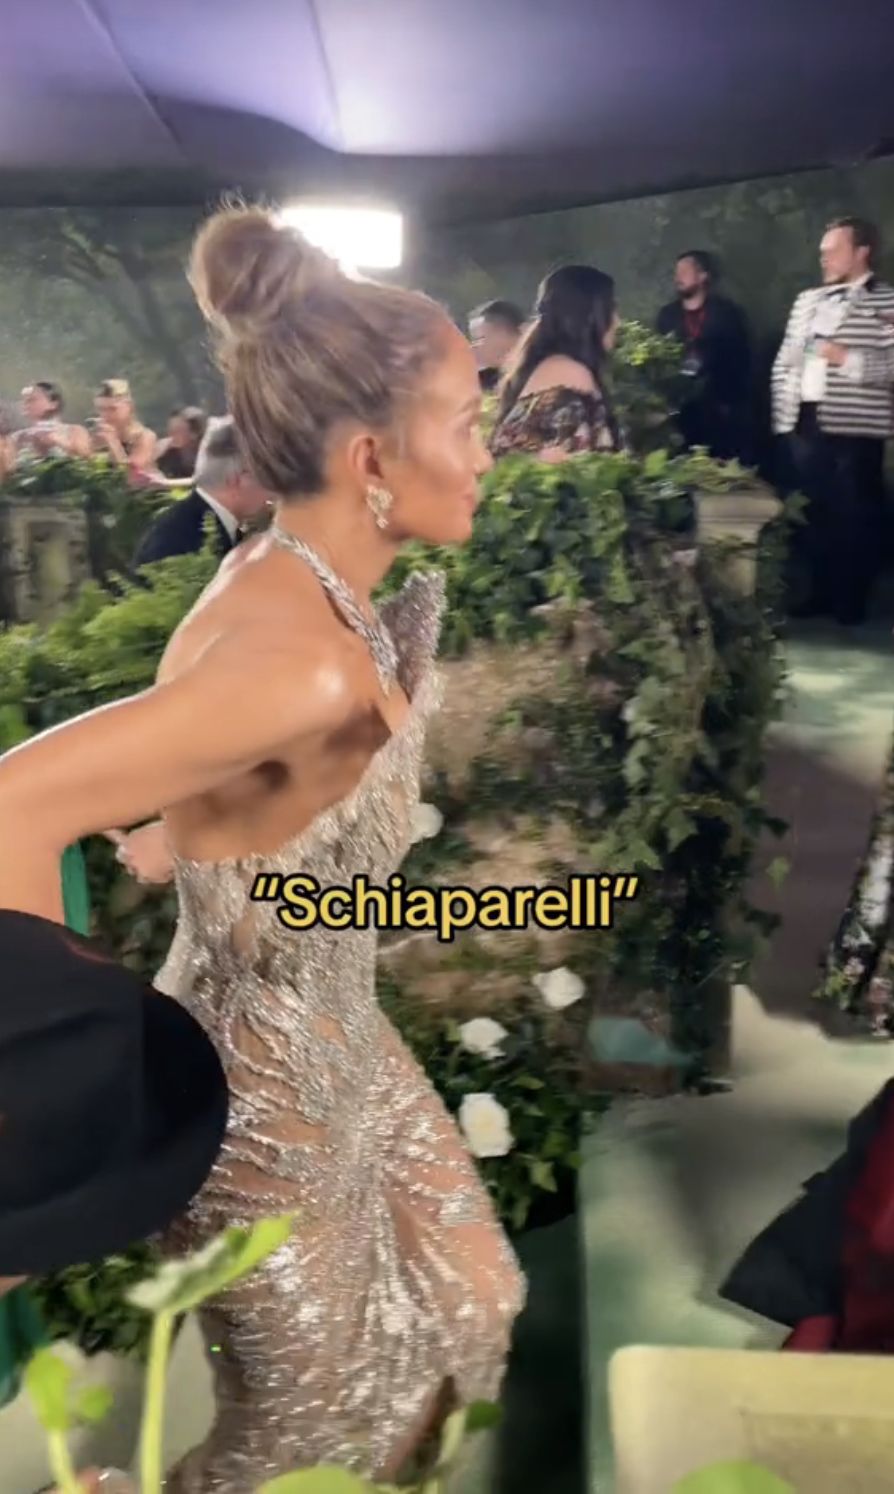 Internet users outraged by Jennifer Lopez's behavior